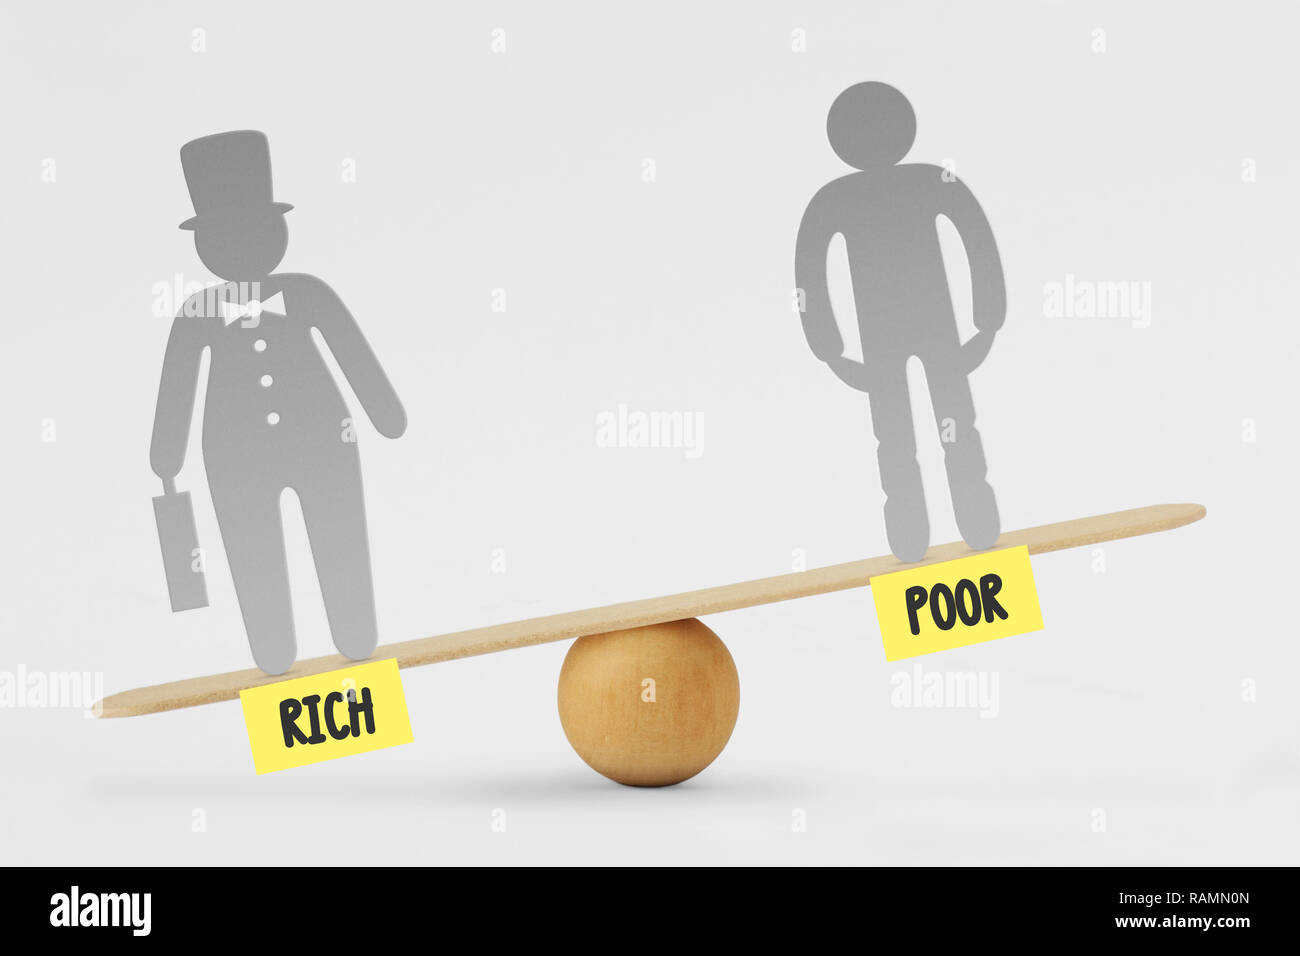 Arme und Reiche Menschen auf Balance Scale-Konzept der sozialen Ungleichheit zwischen reichen und armen Menschen Stockfoto